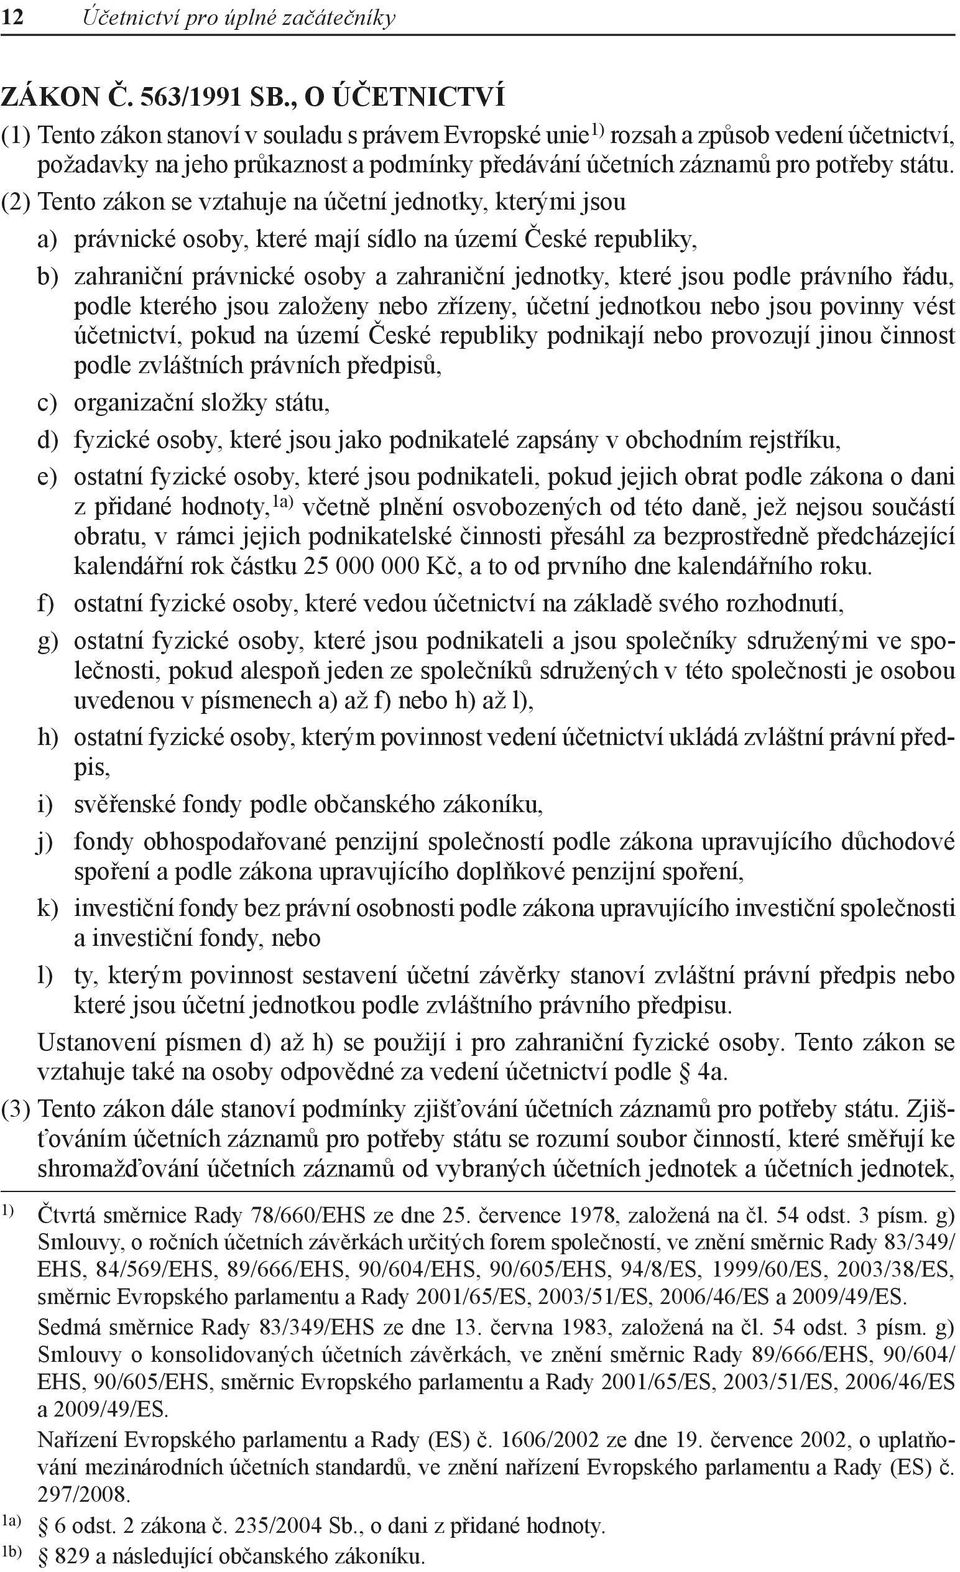 (2) Tento zákon se vztahuje na účetní jednotky, kterými jsou a) právnické osoby, které mají sídlo na území České republiky, b) zahraniční právnické osoby a zahraniční jednotky, které jsou podle